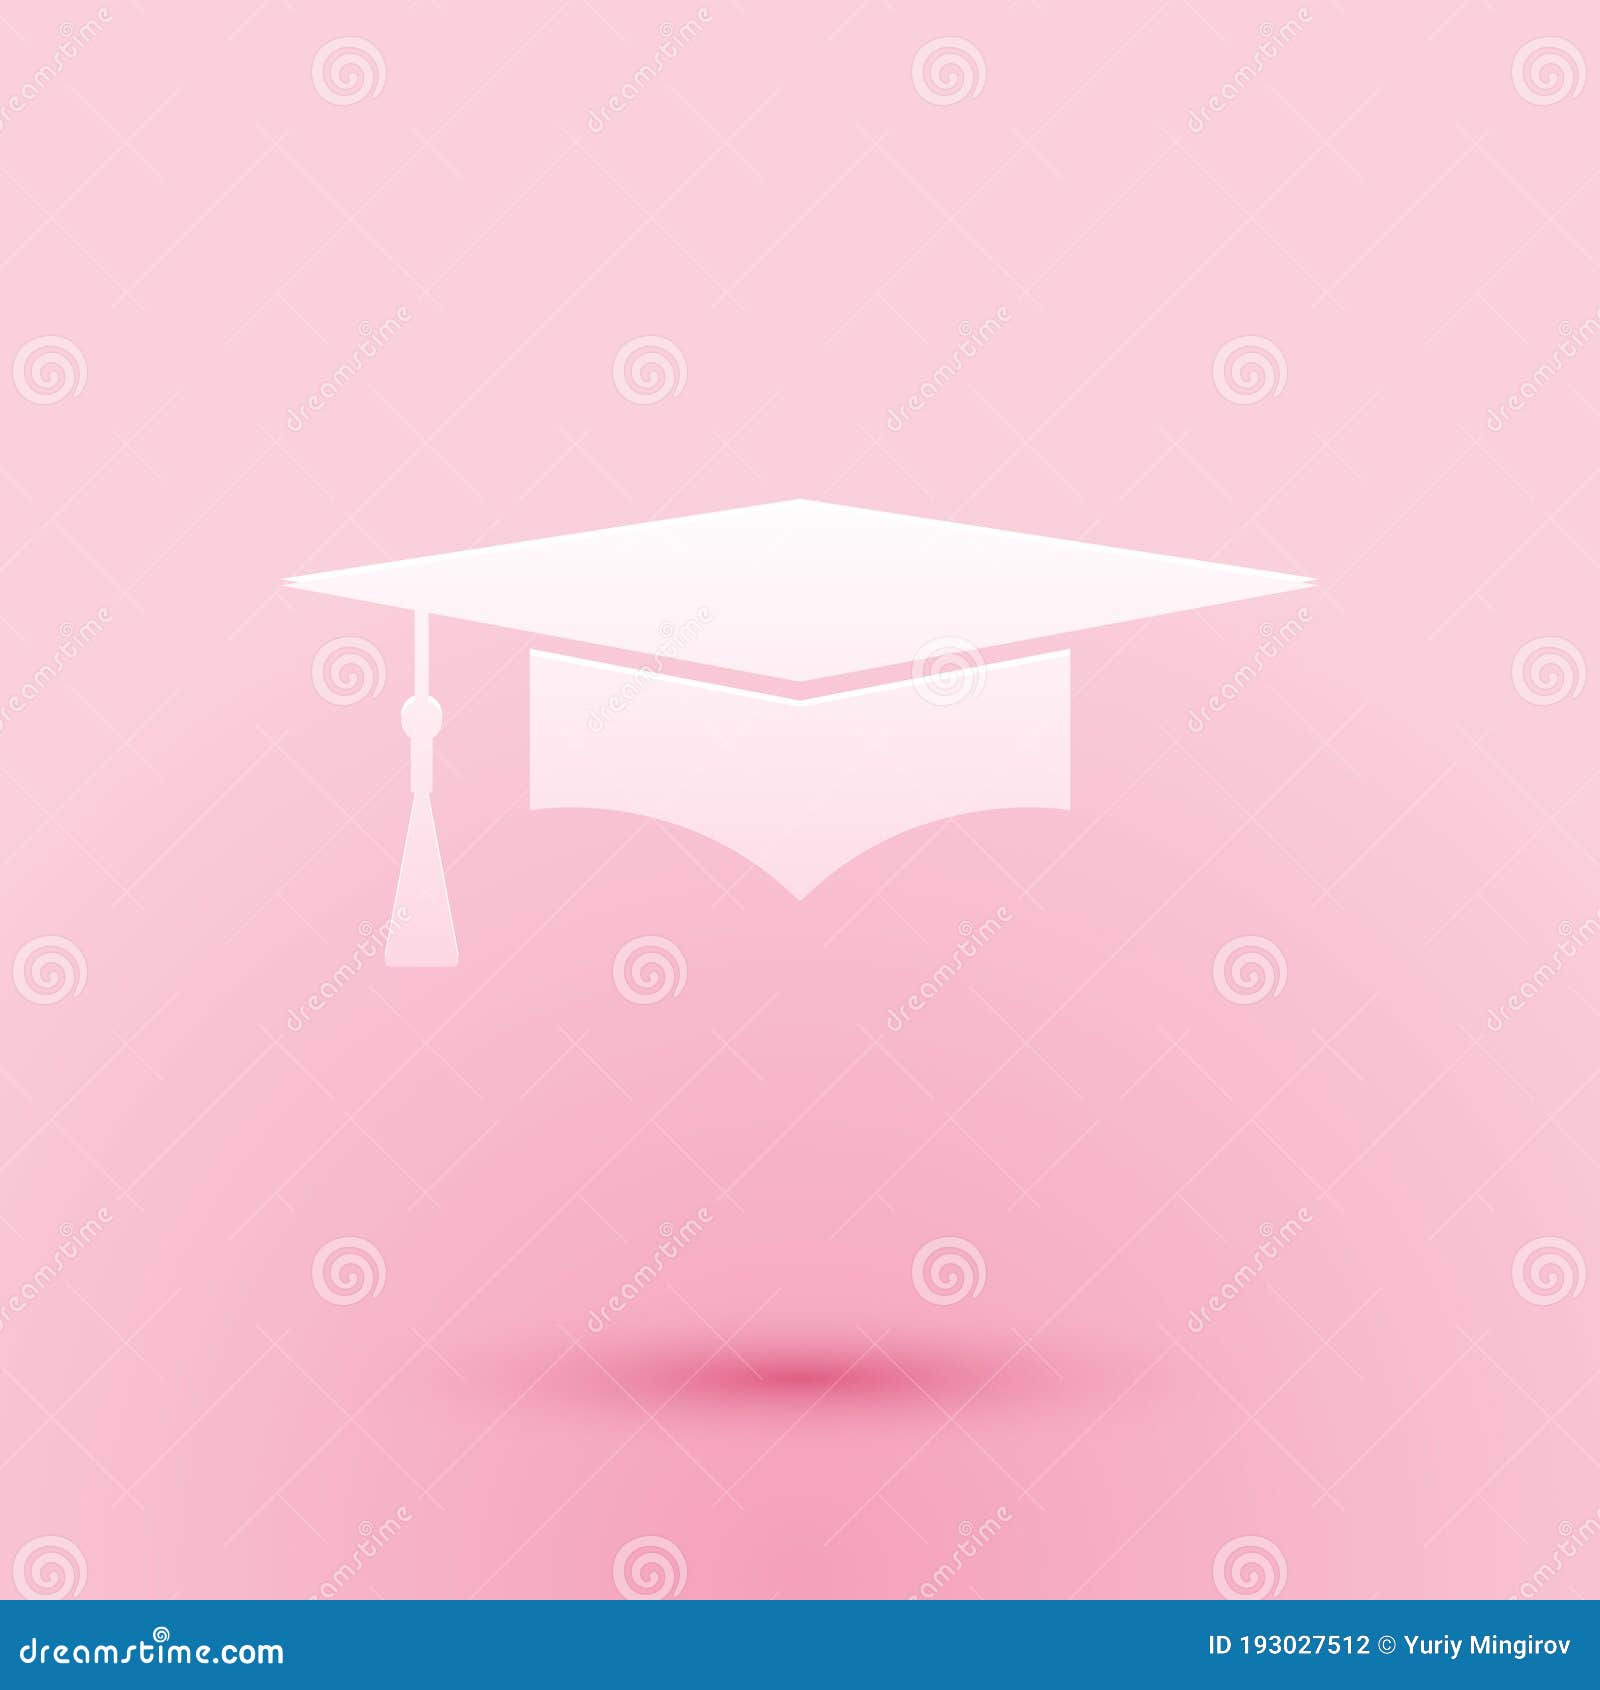 Biểu tượng mũ tốt nghiệp cắt giấy trên nền hồng: \